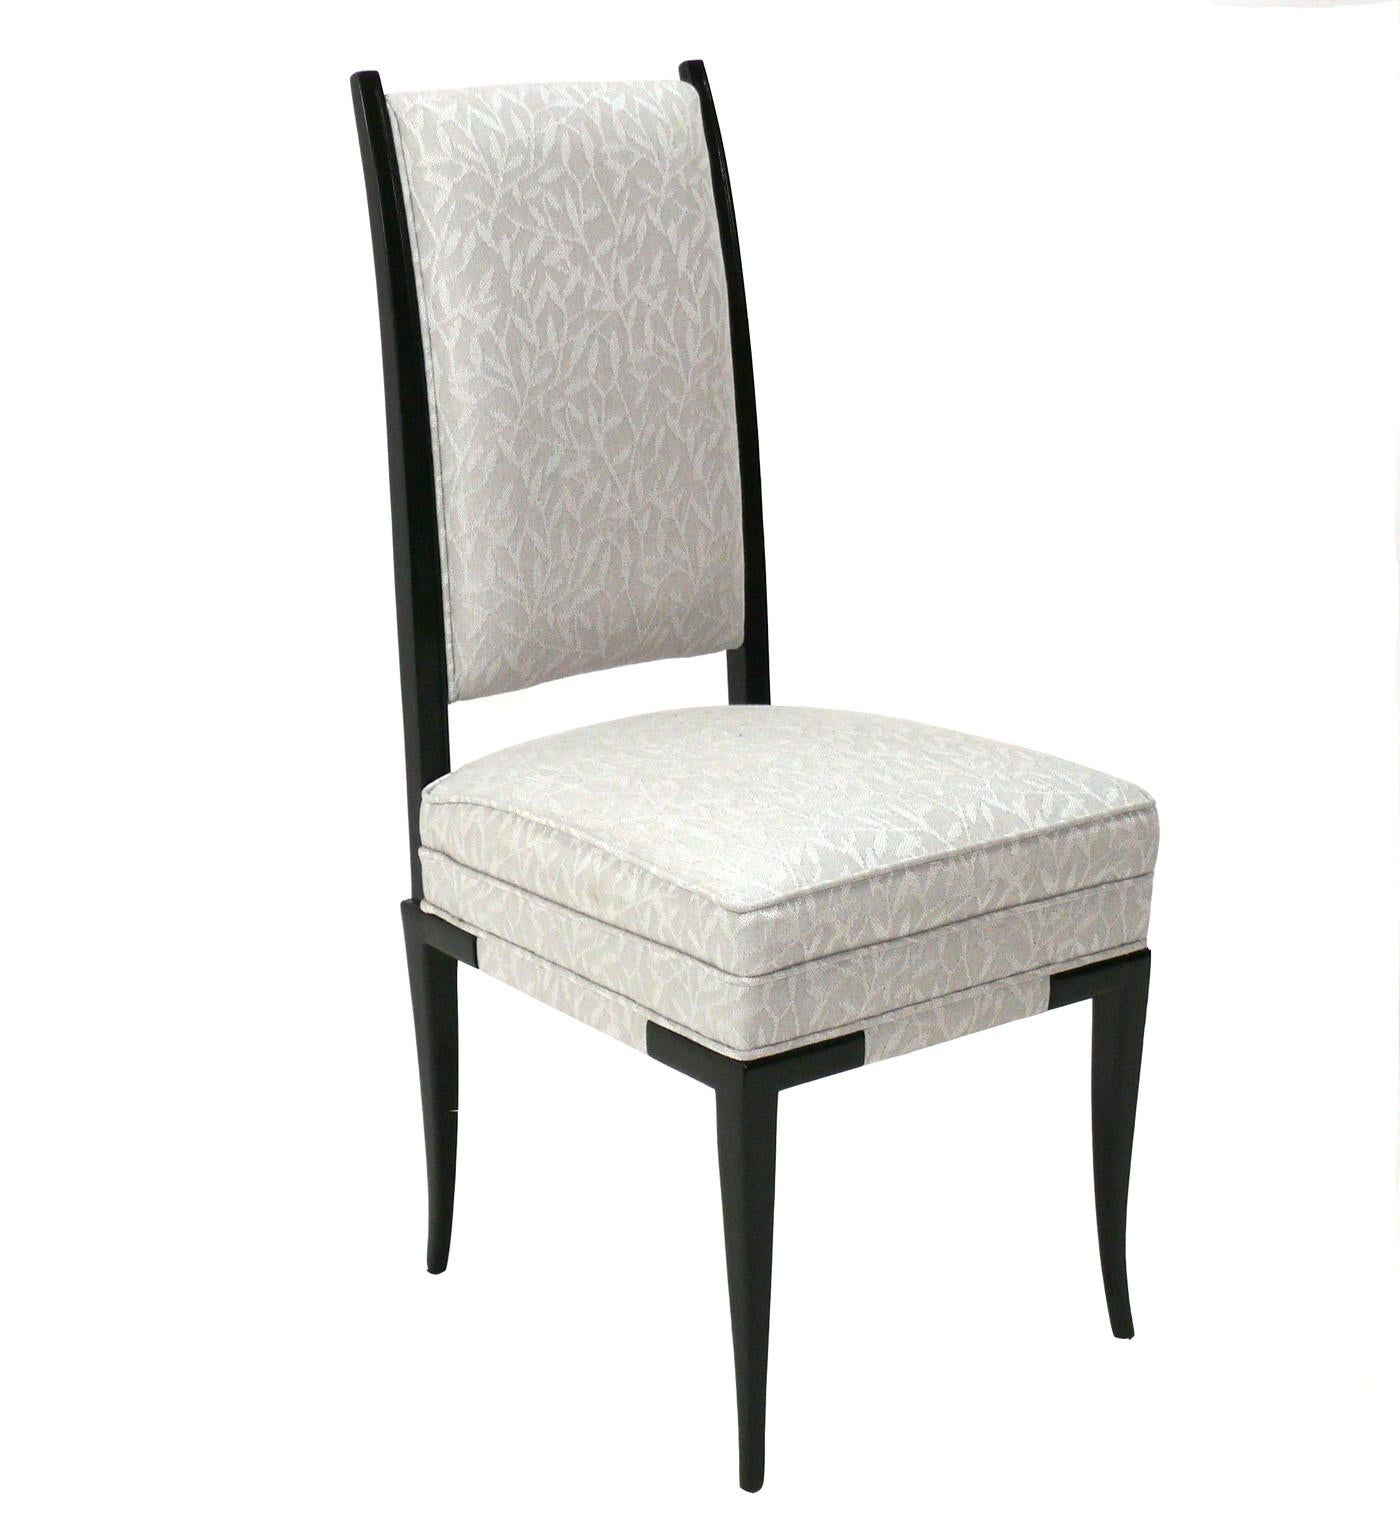 Acht elegante Esszimmerstühle, entworfen von Tommi Parzinger, Amerikaner, ca. 1950er Jahre. Sie wurden vor kurzem mit schwarzem Lack überzogen und neu gepolstert. Bitte beachten Sie, dass sich zwei der armlosen Stühle leicht von den anderen sechs